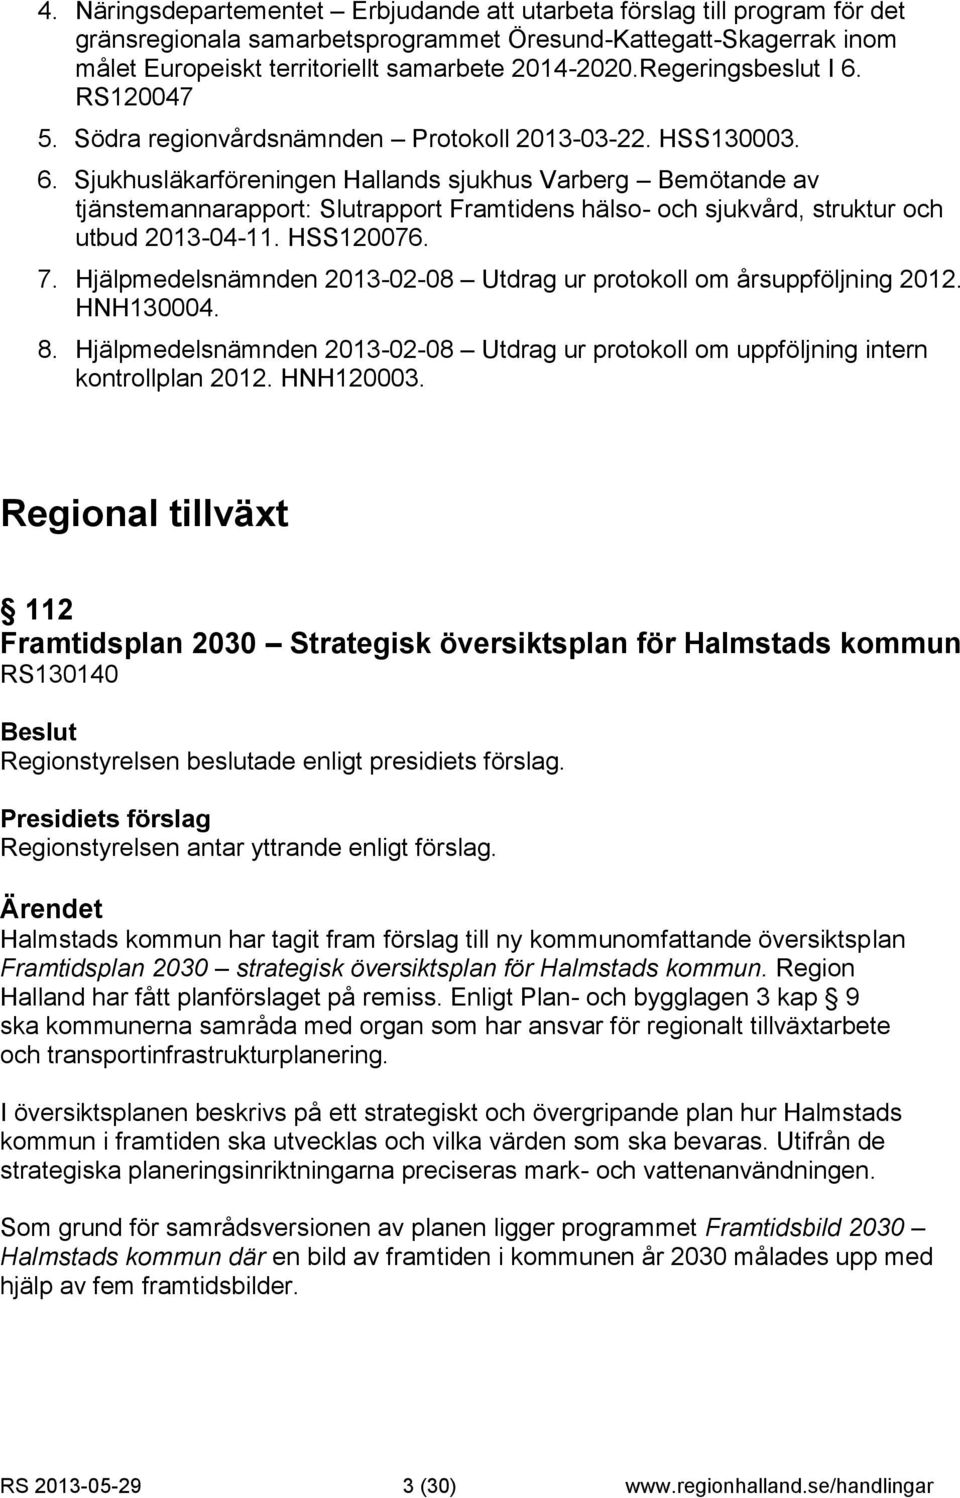 HSS120076. 7. Hjälpmedelsnämnden 2013-02-08 Utdrag ur protokoll om årsuppföljning 2012. HNH130004. 8. Hjälpmedelsnämnden 2013-02-08 Utdrag ur protokoll om uppföljning intern kontrollplan 2012.